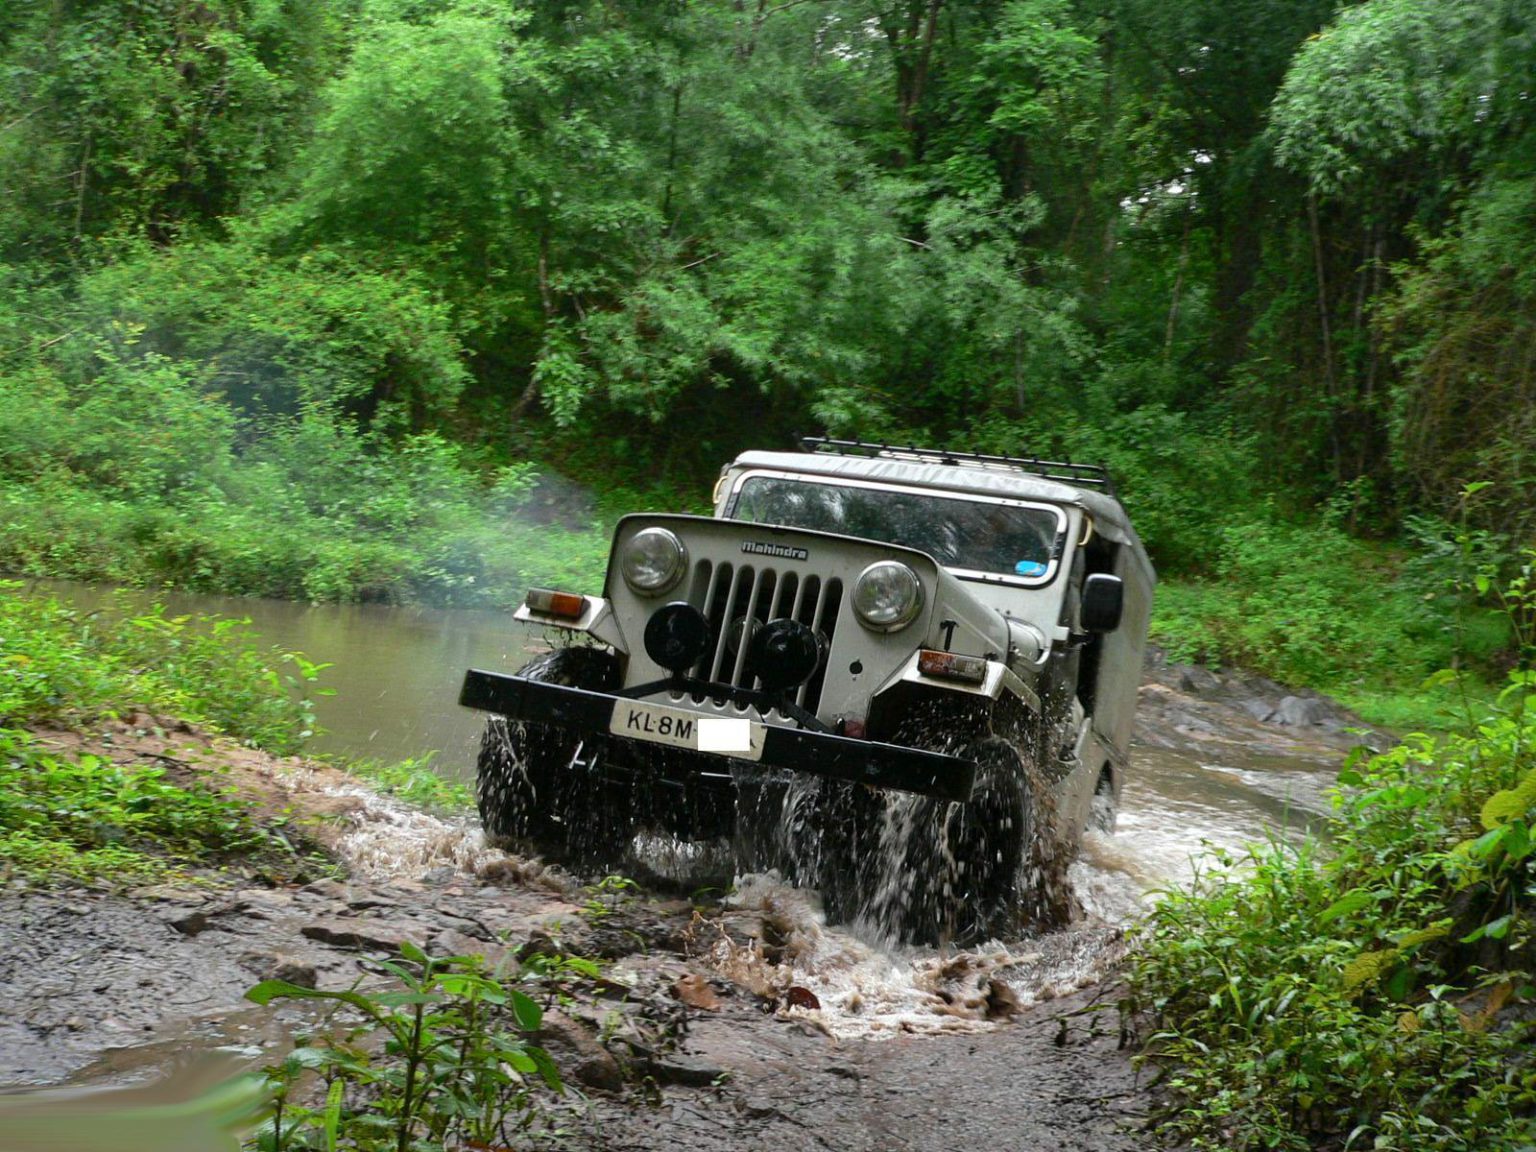 Coorg Jeep Safari trails